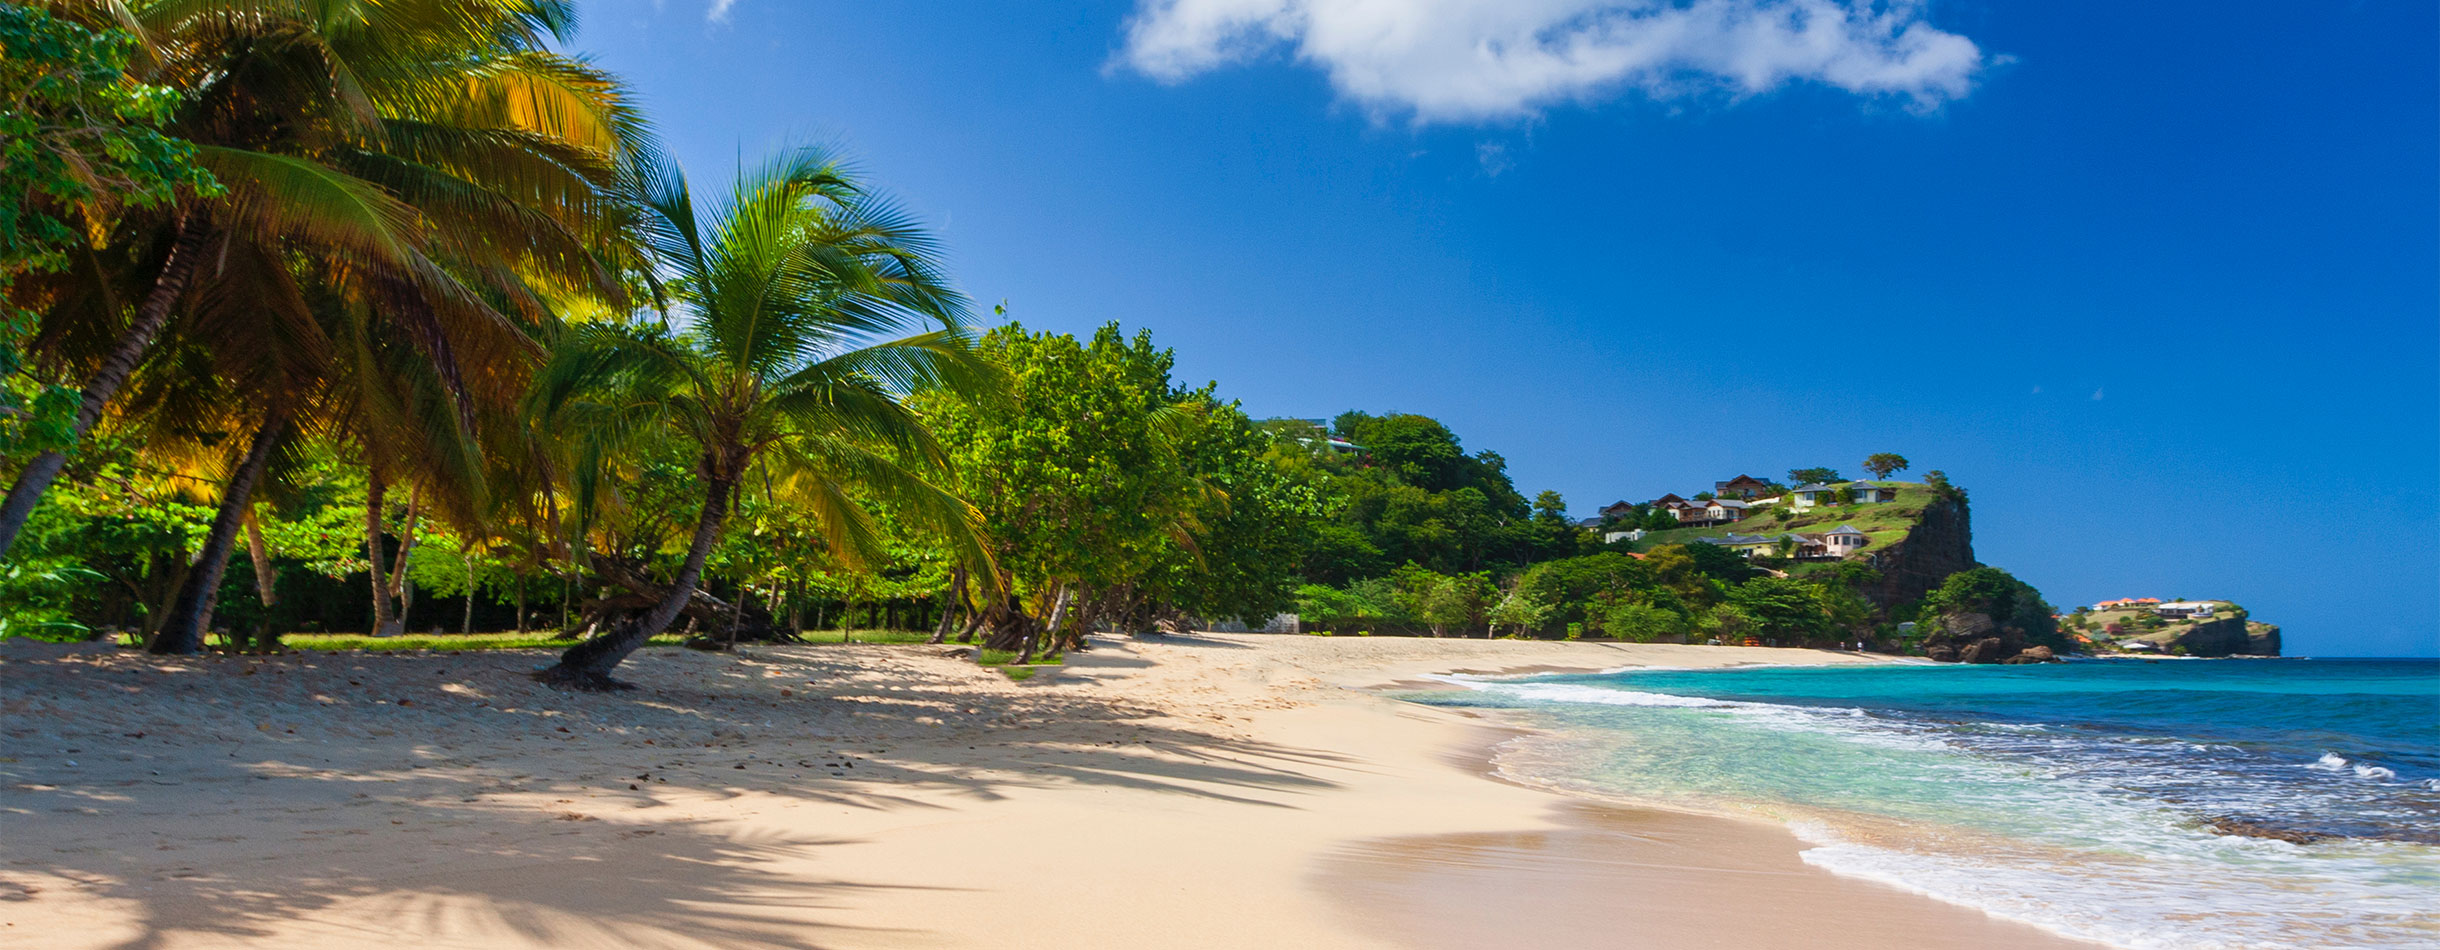 Beautiful View Of Grand Anse In Grenada